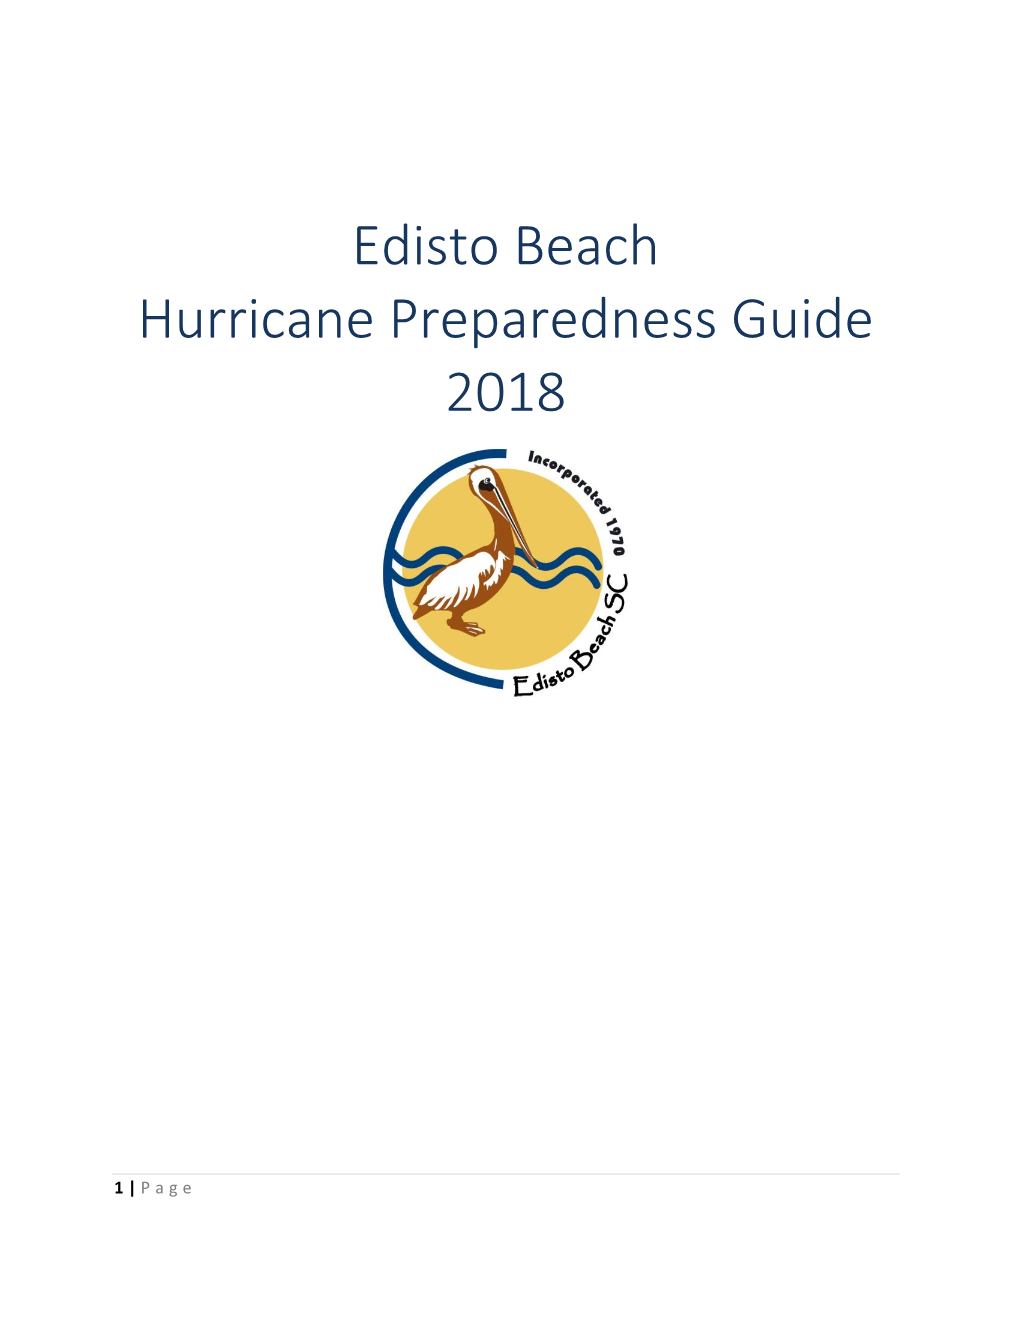 Edisto Beach Hurricane Preparedness Guide 2018